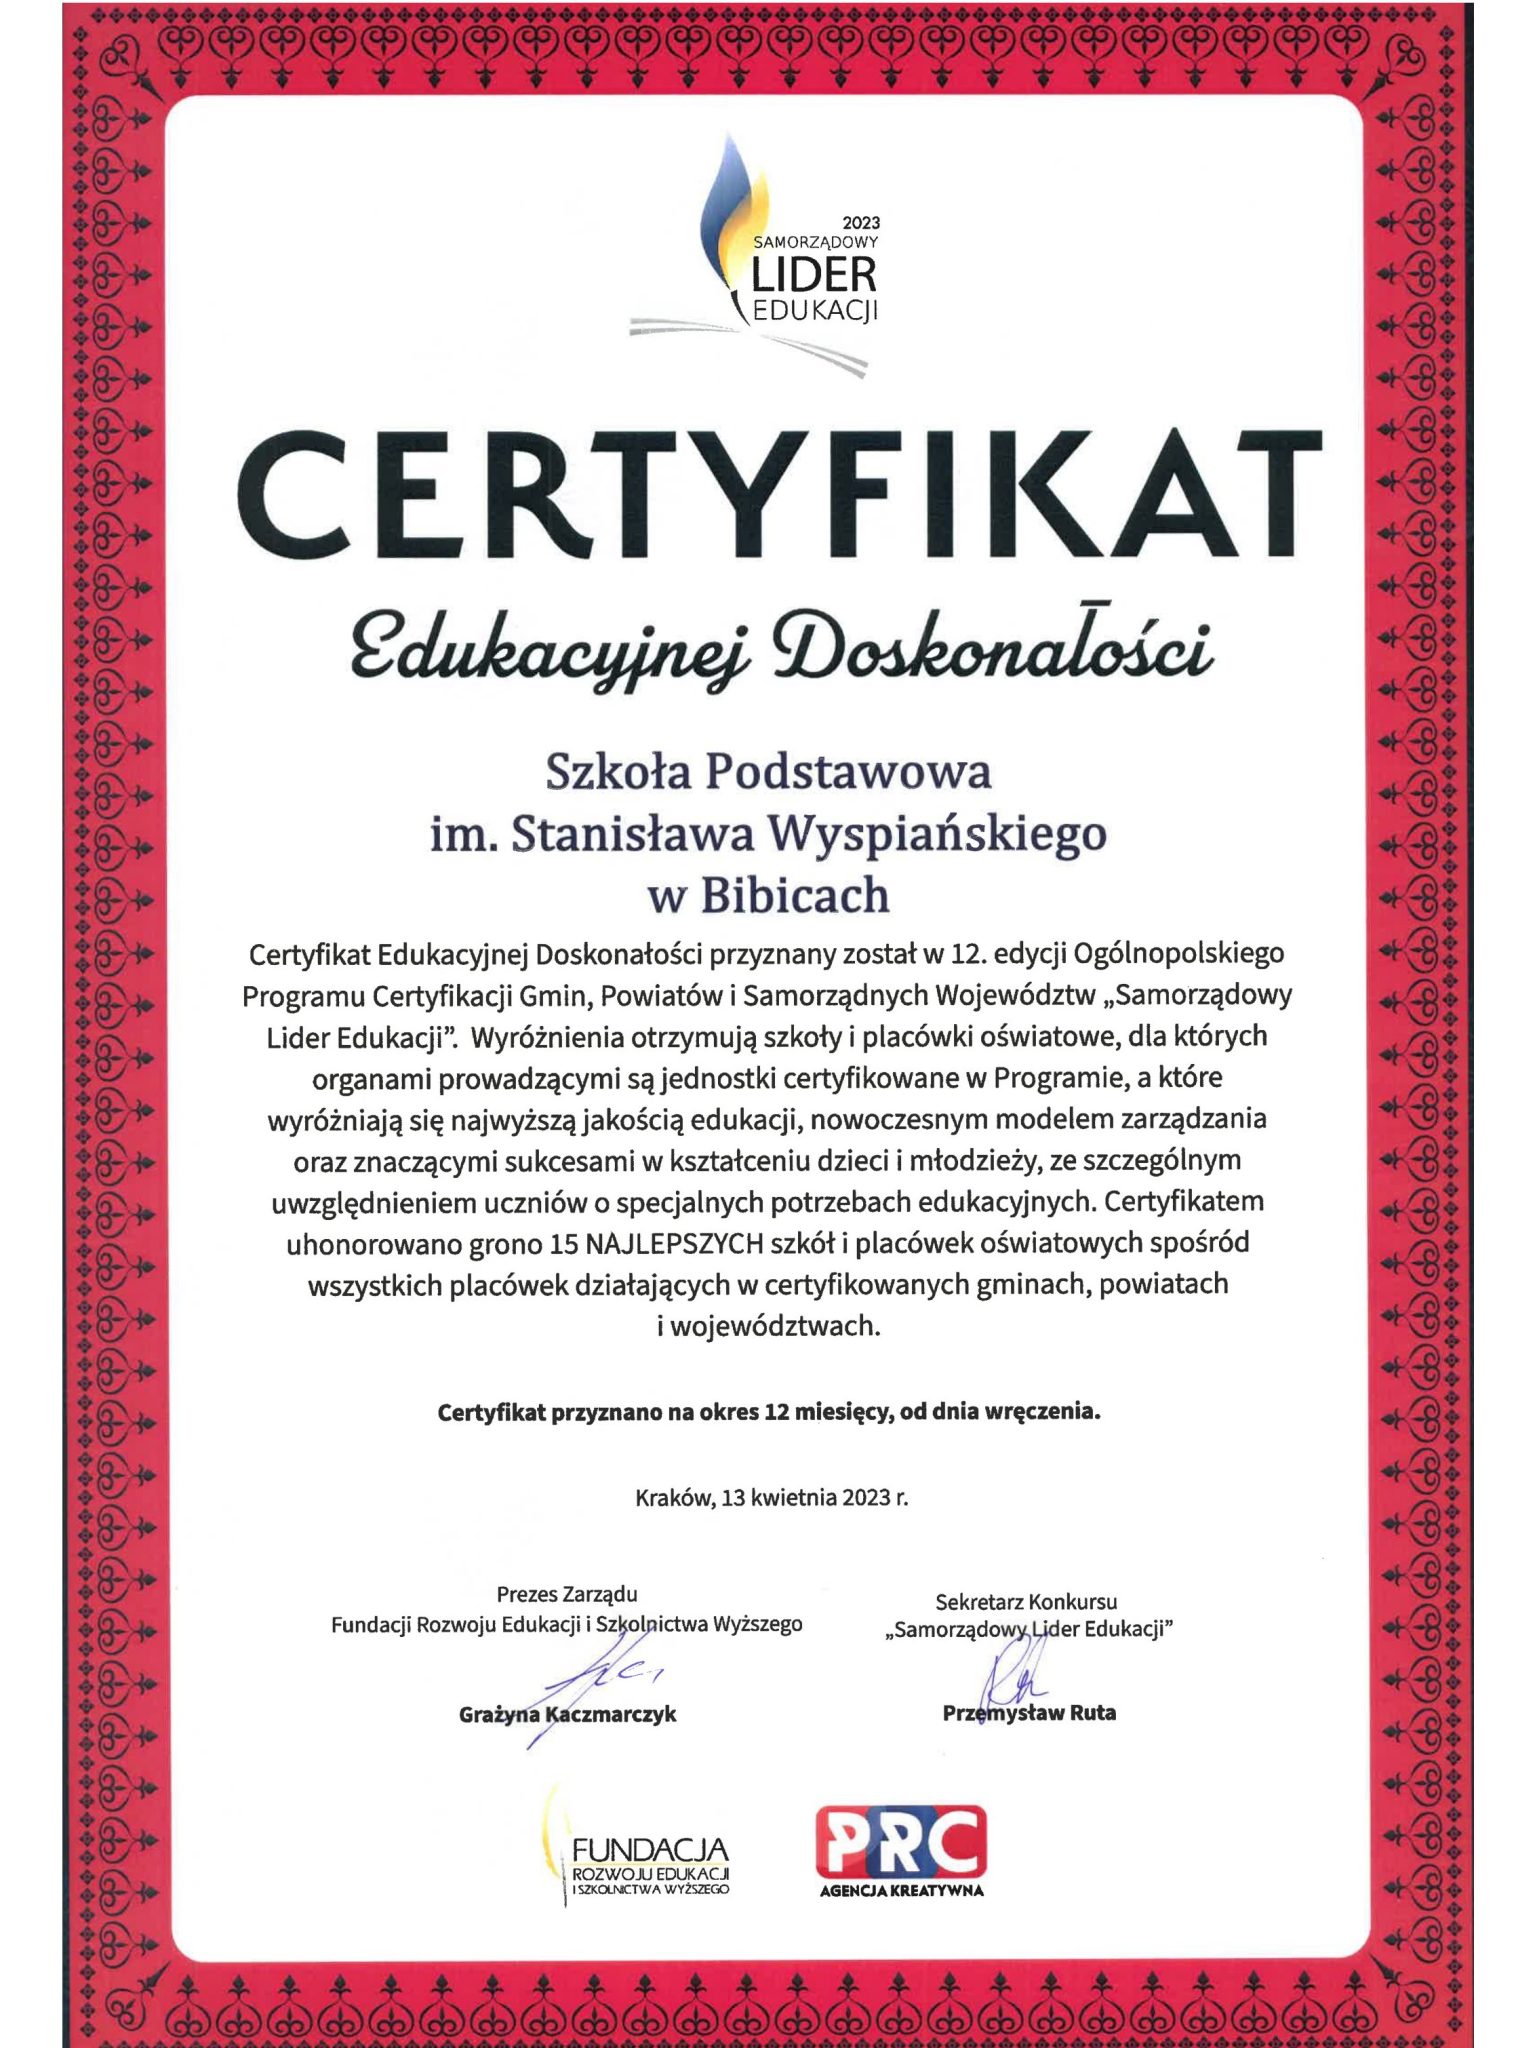 Lider Edukacji - Certyfikat "Edukacyjna Doskonałość"